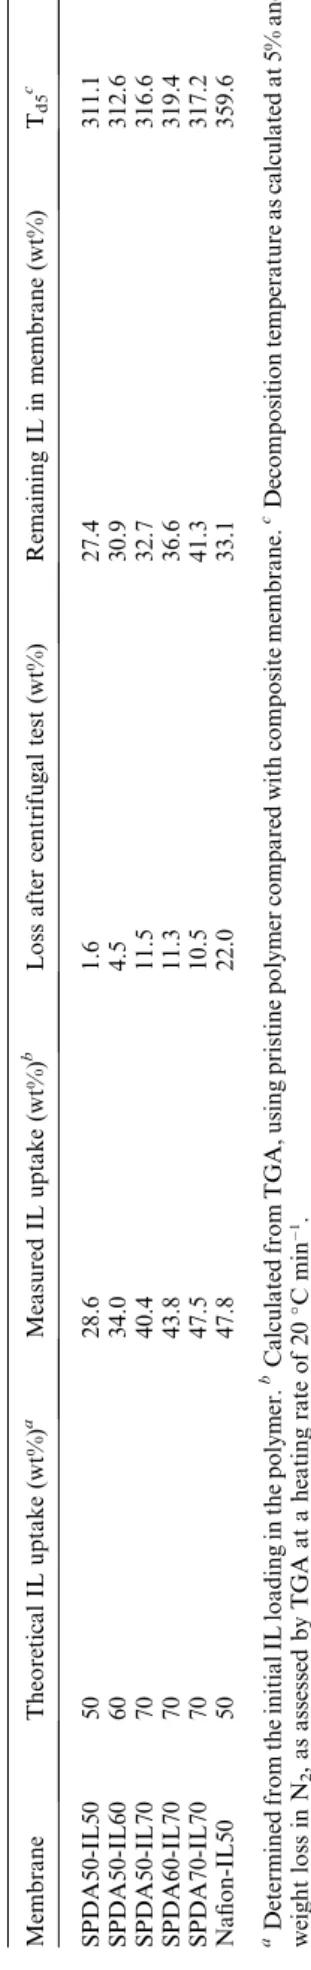 Fig. 5 A photograph of the SPDA-IL membrane (SPDA70-IL70). Table